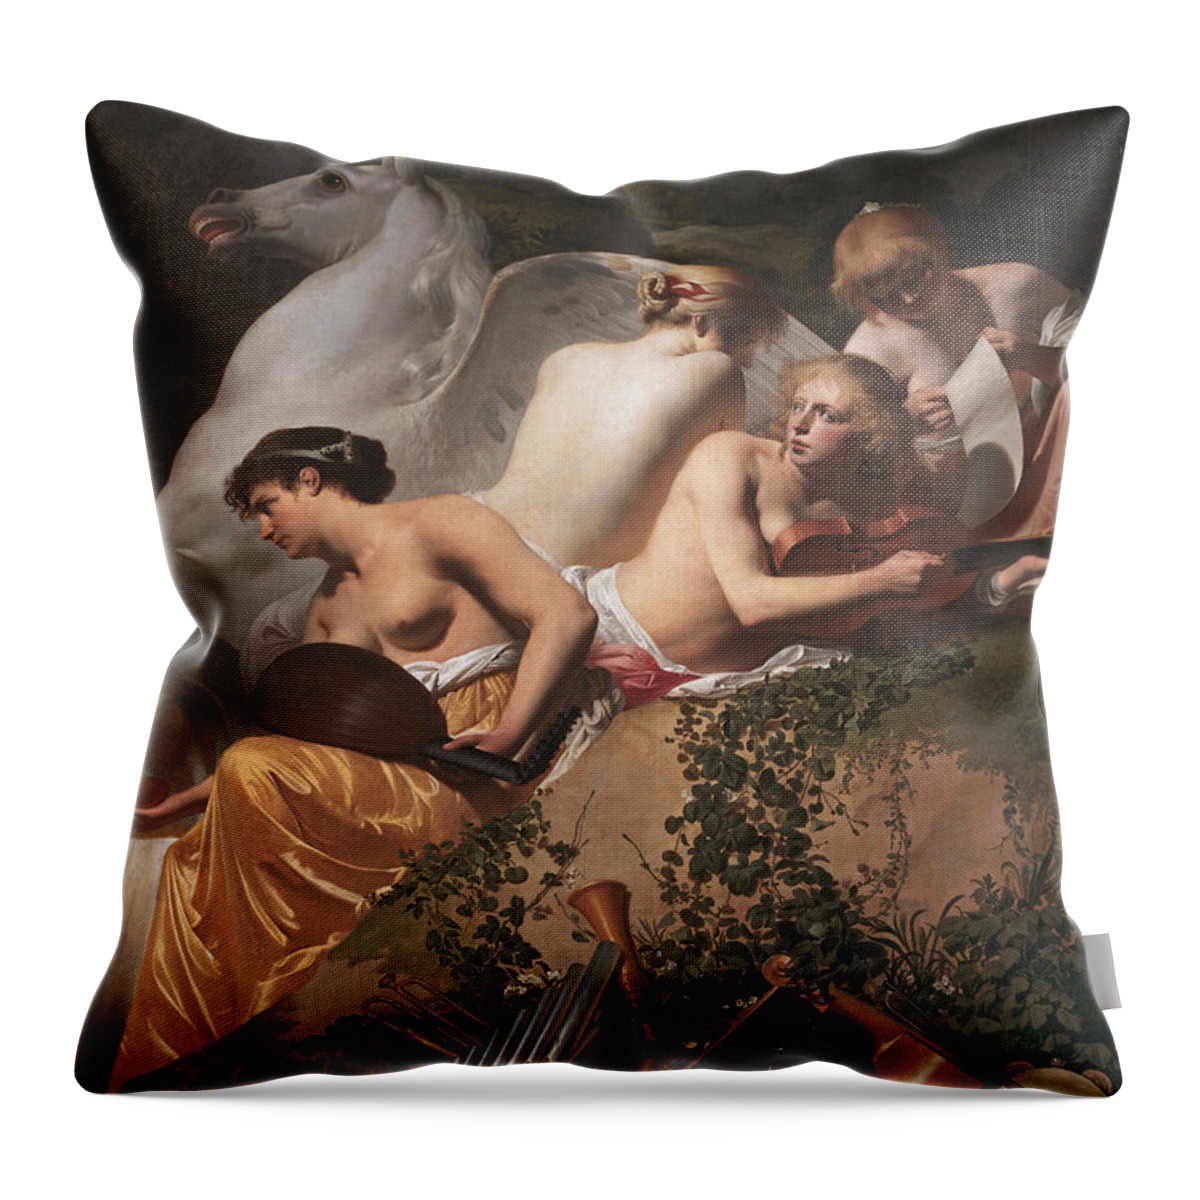 Caesar Van Everdingen Throw Pillow featuring the painting Four Muses and Pegasus by Caesar van Everdingen